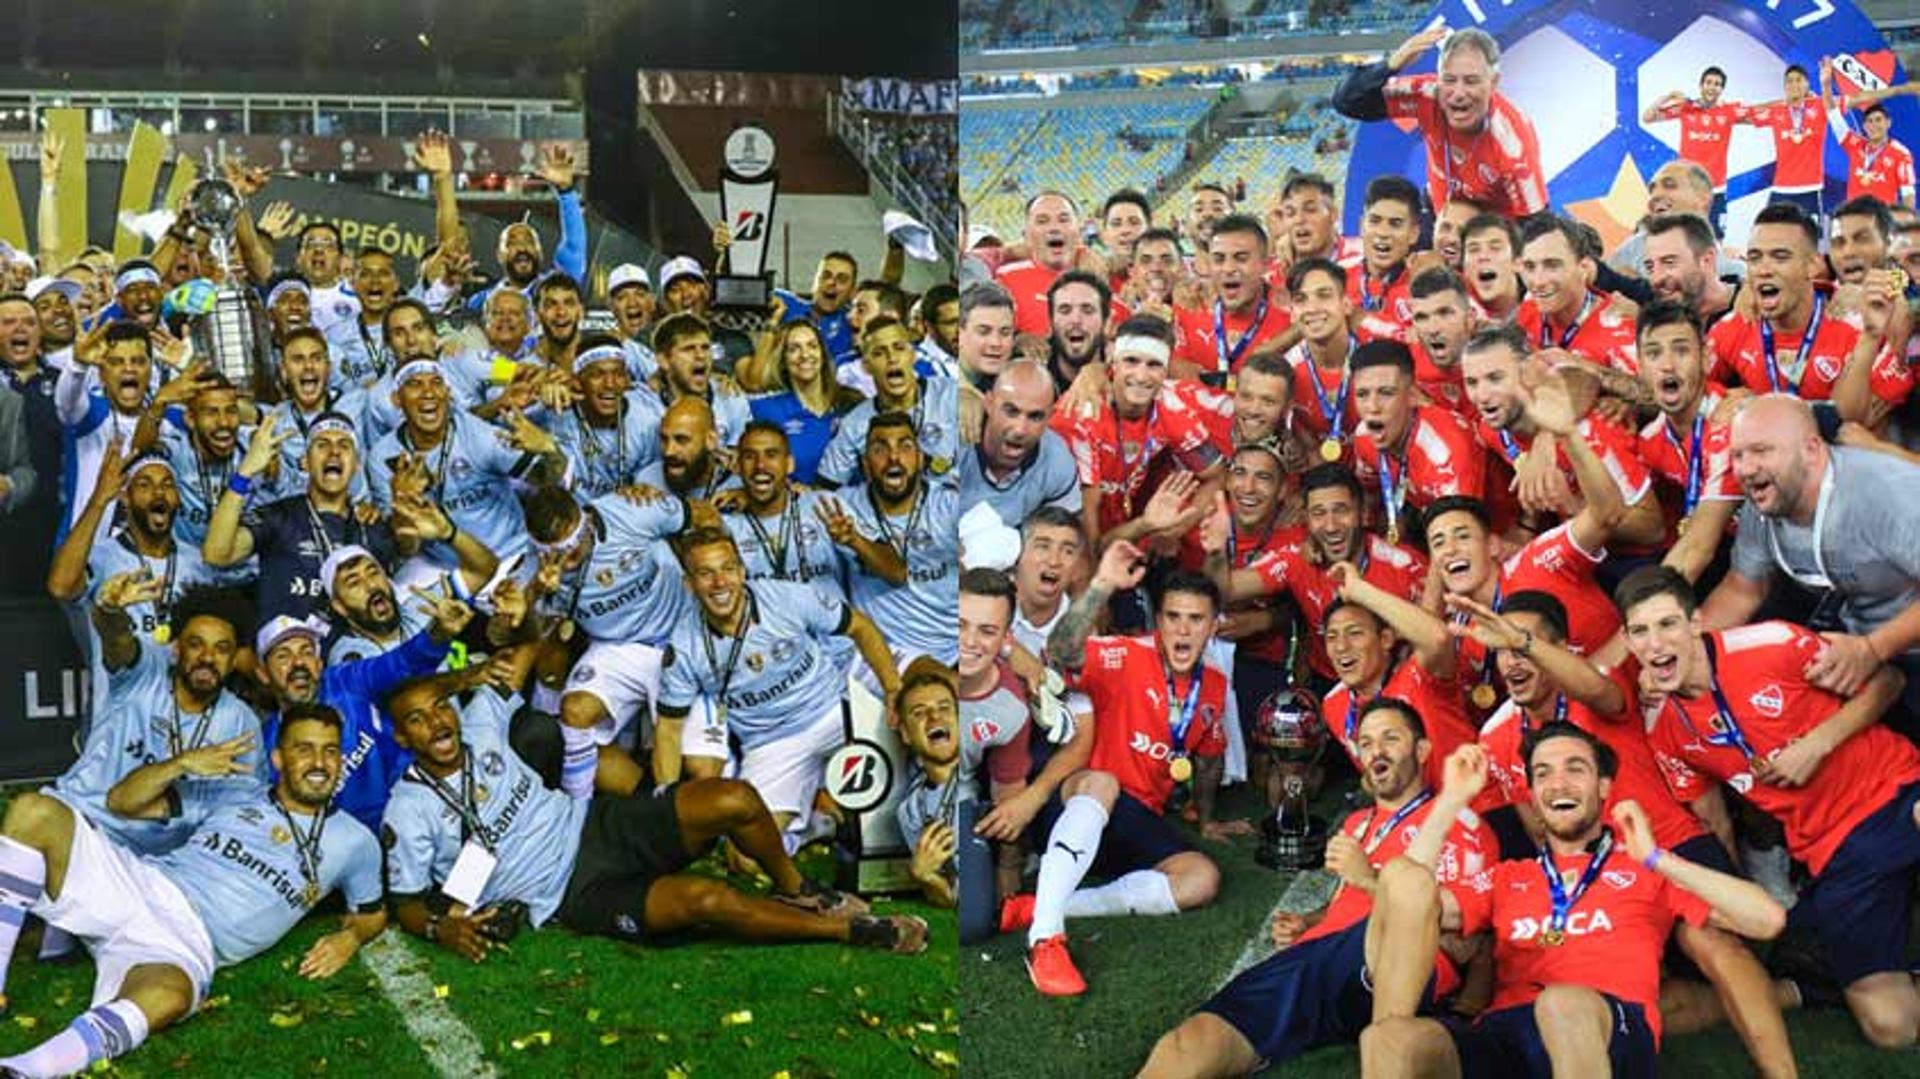 A temporada de 2017 foi marcada por embates entre brasileiros e argentinos, inclusive em finais. Nas decisões, foi uma conquista para cada lado: Grêmio na Libertadores e Independiente na Copa Sul-Americana. E em confrontos? Confira como foram os 29 jogos.